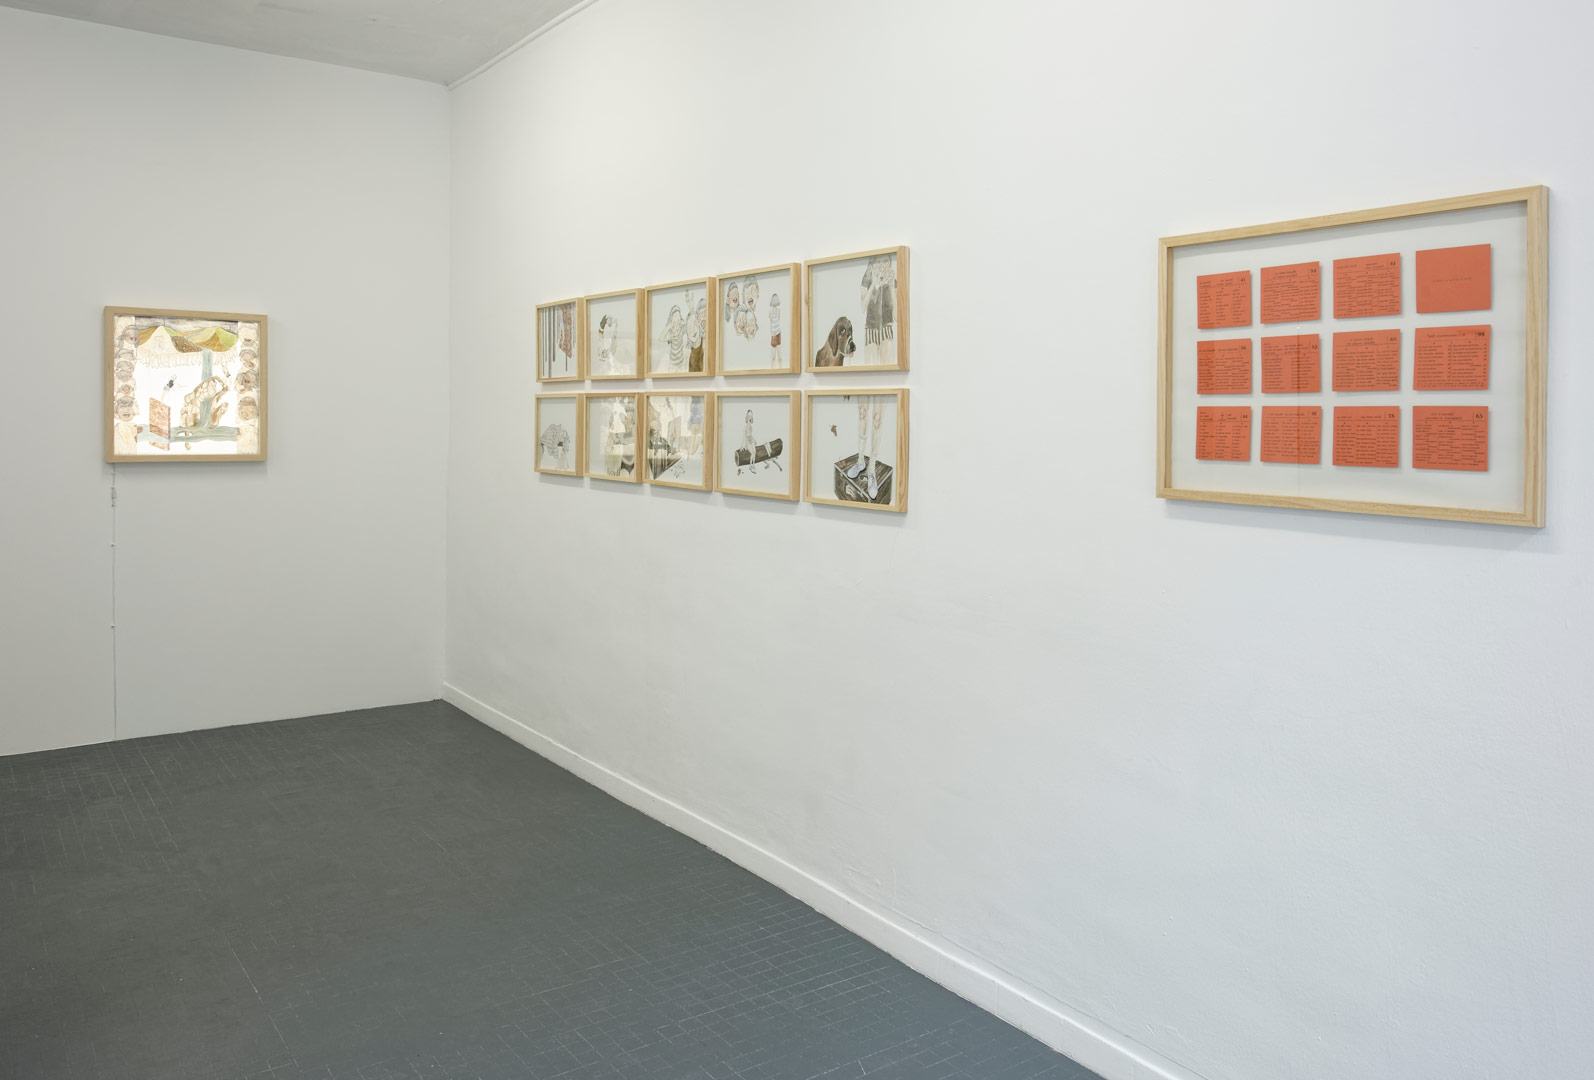 Vue d'exposition aux Limbes de l'ensemble intitulé "Abcéder" regroupant 10 dessins, un dessin avec dispositif lumineux et un ensemble de 12 textes encadrés.